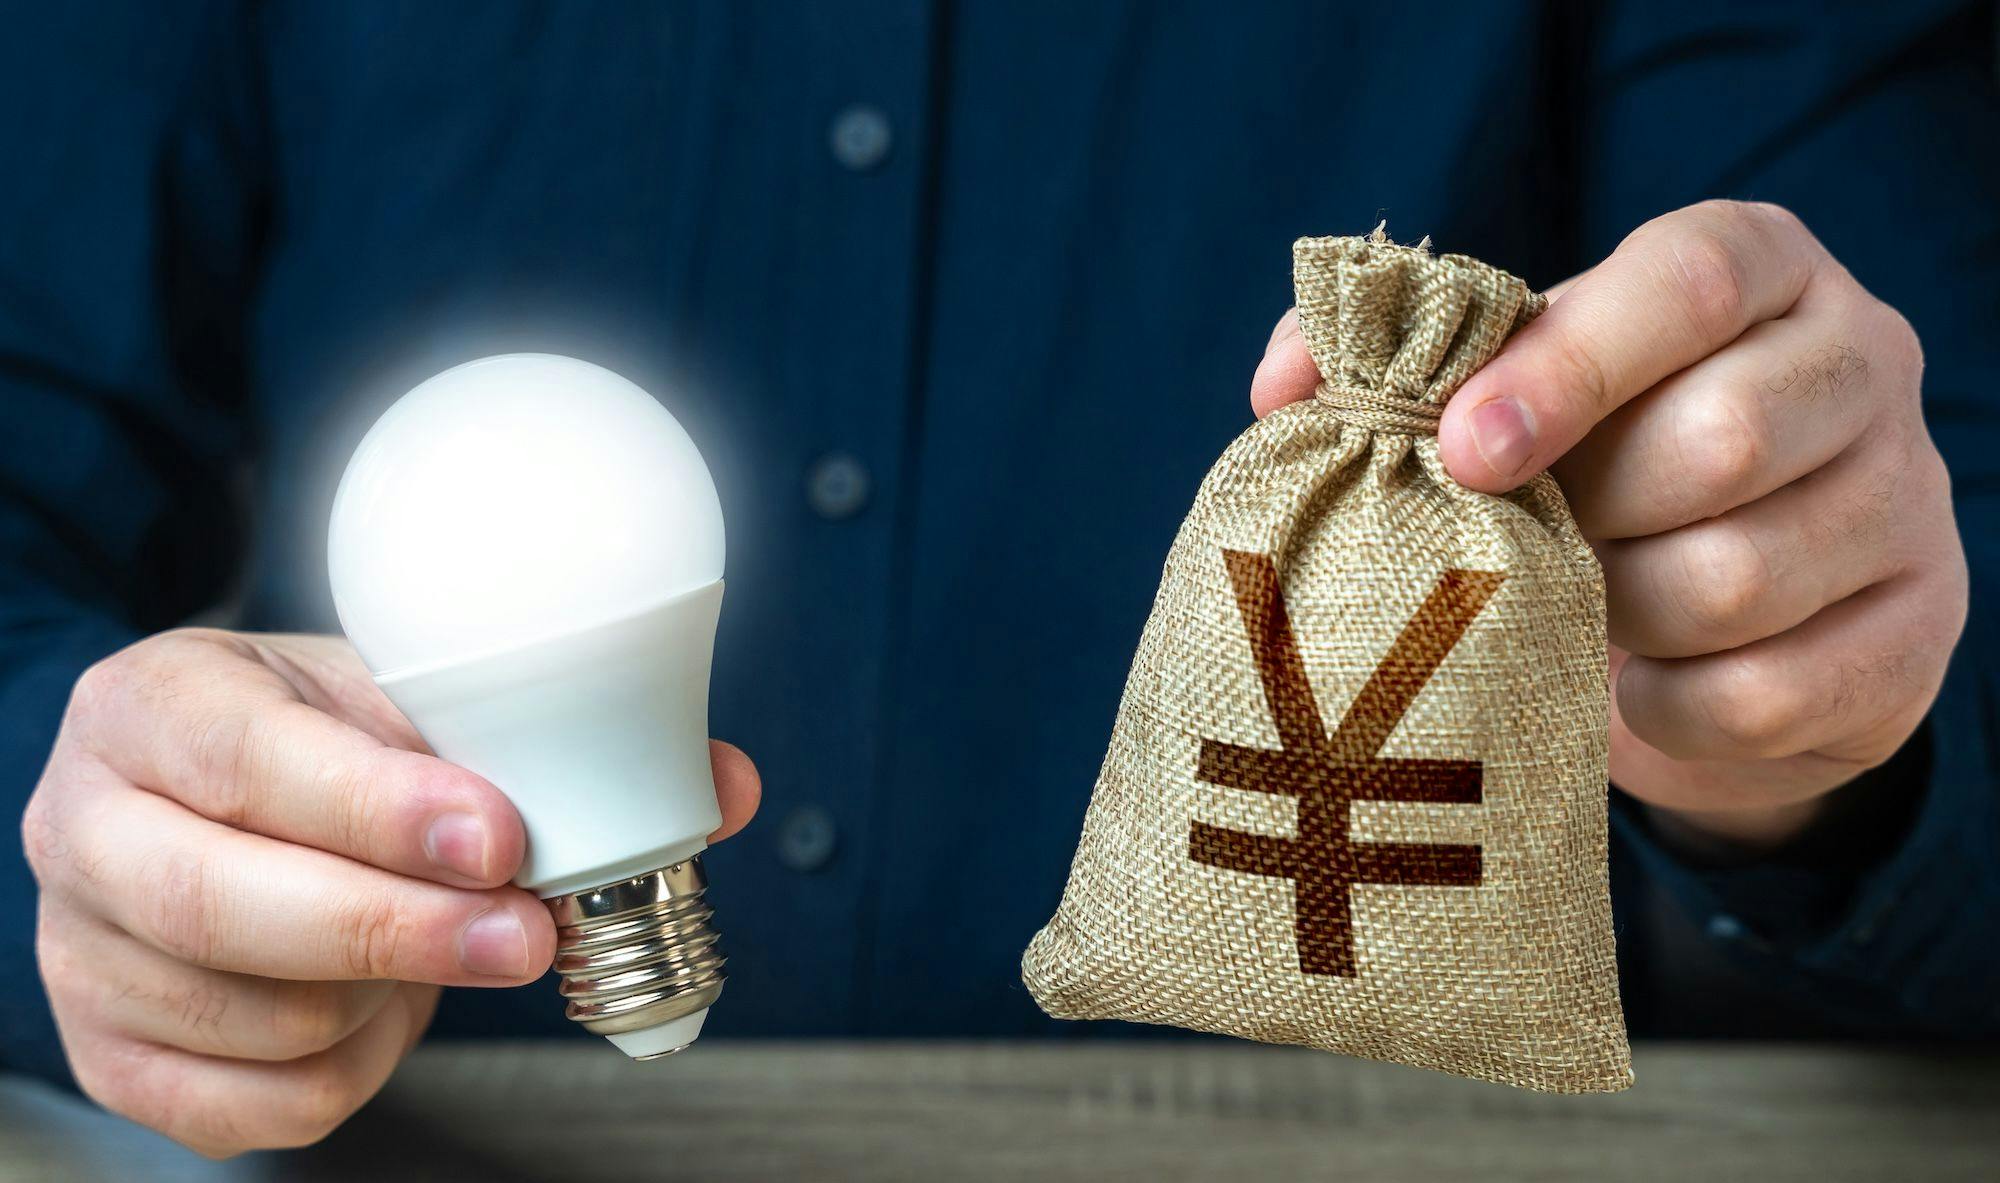 China Wirtschaft, Industrie, Technologie, Patente: Das Foto zeigt einen Mann, der in einer Hand eine Glühbirne, in anderer einen Yuan-Sack hält